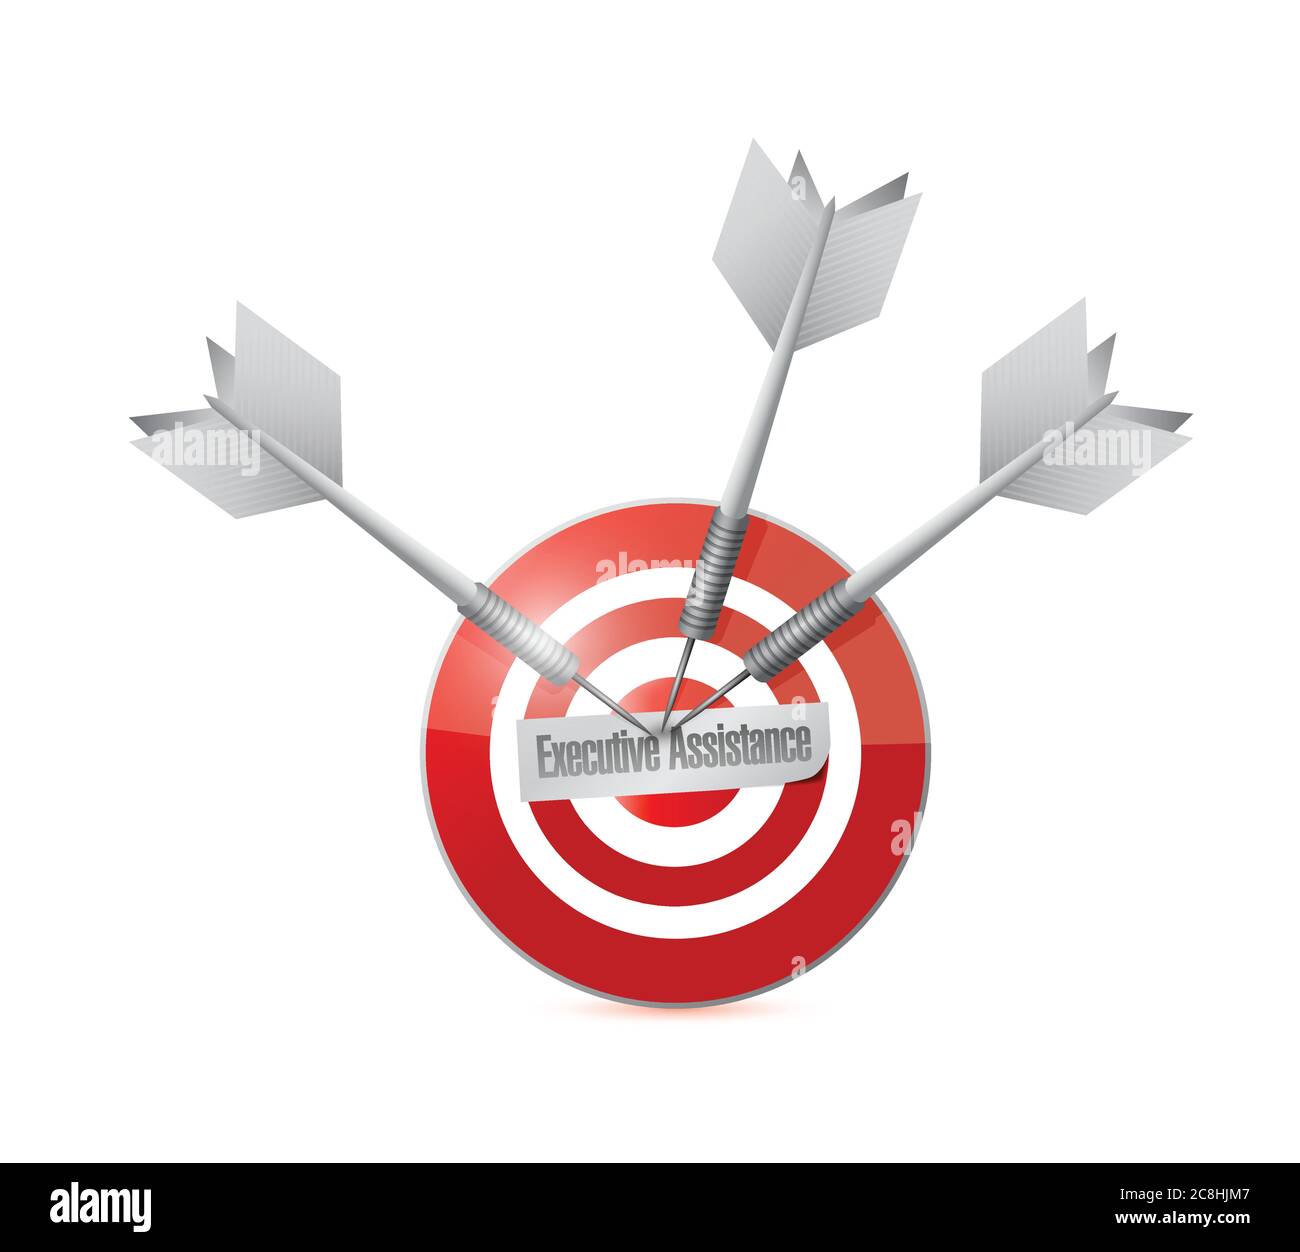 Immagine del progetto del progetto del simbolo del target di assistenza esecutiva Illustrazione Vettoriale